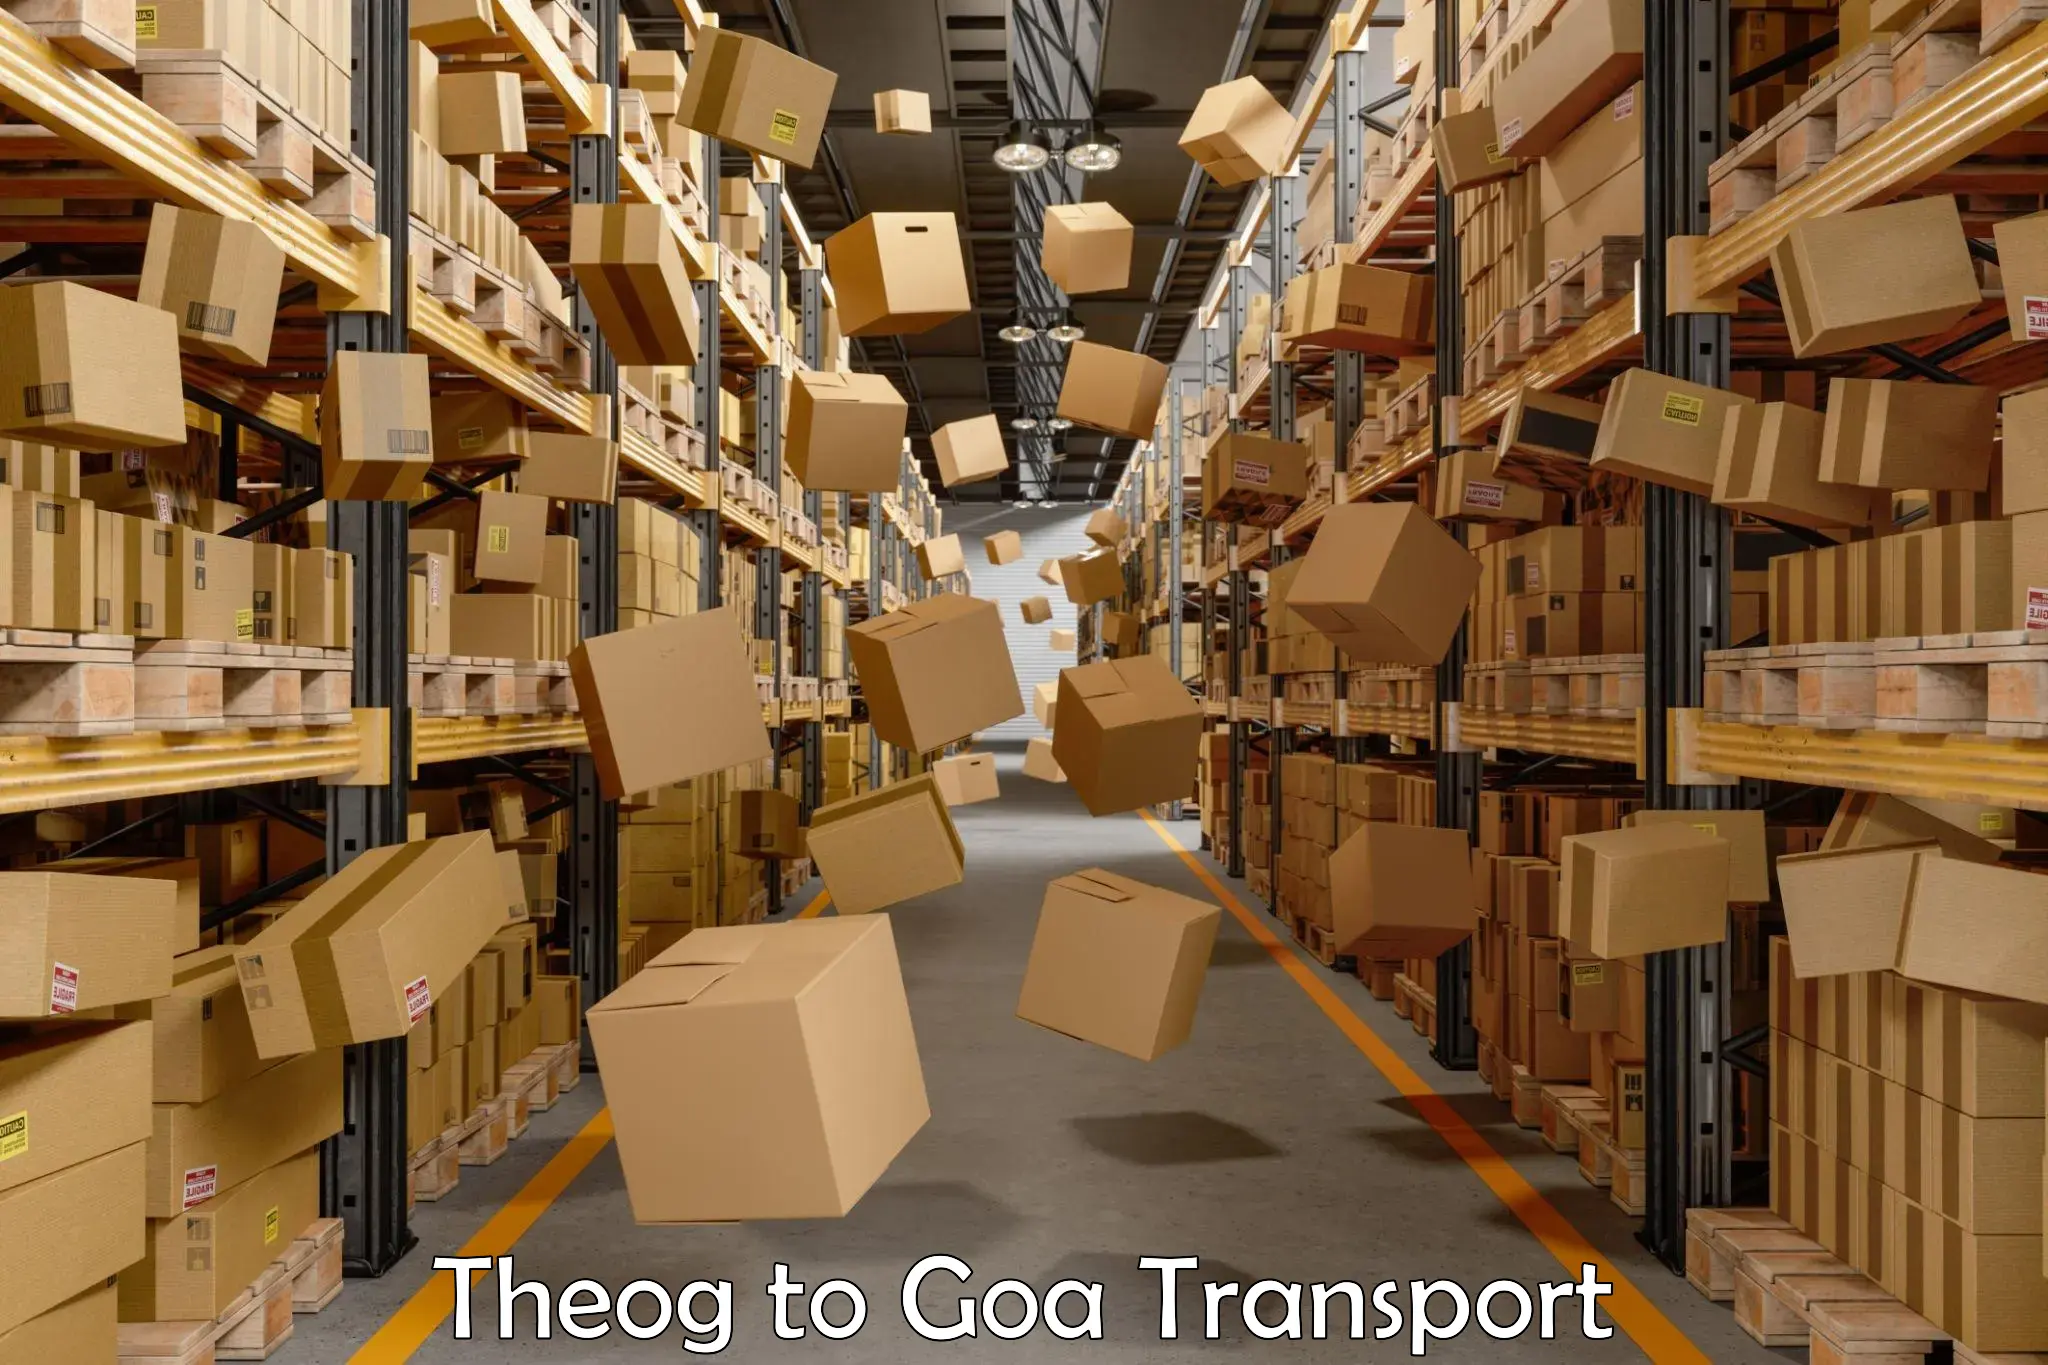 Nearest transport service Theog to Vasco da Gama